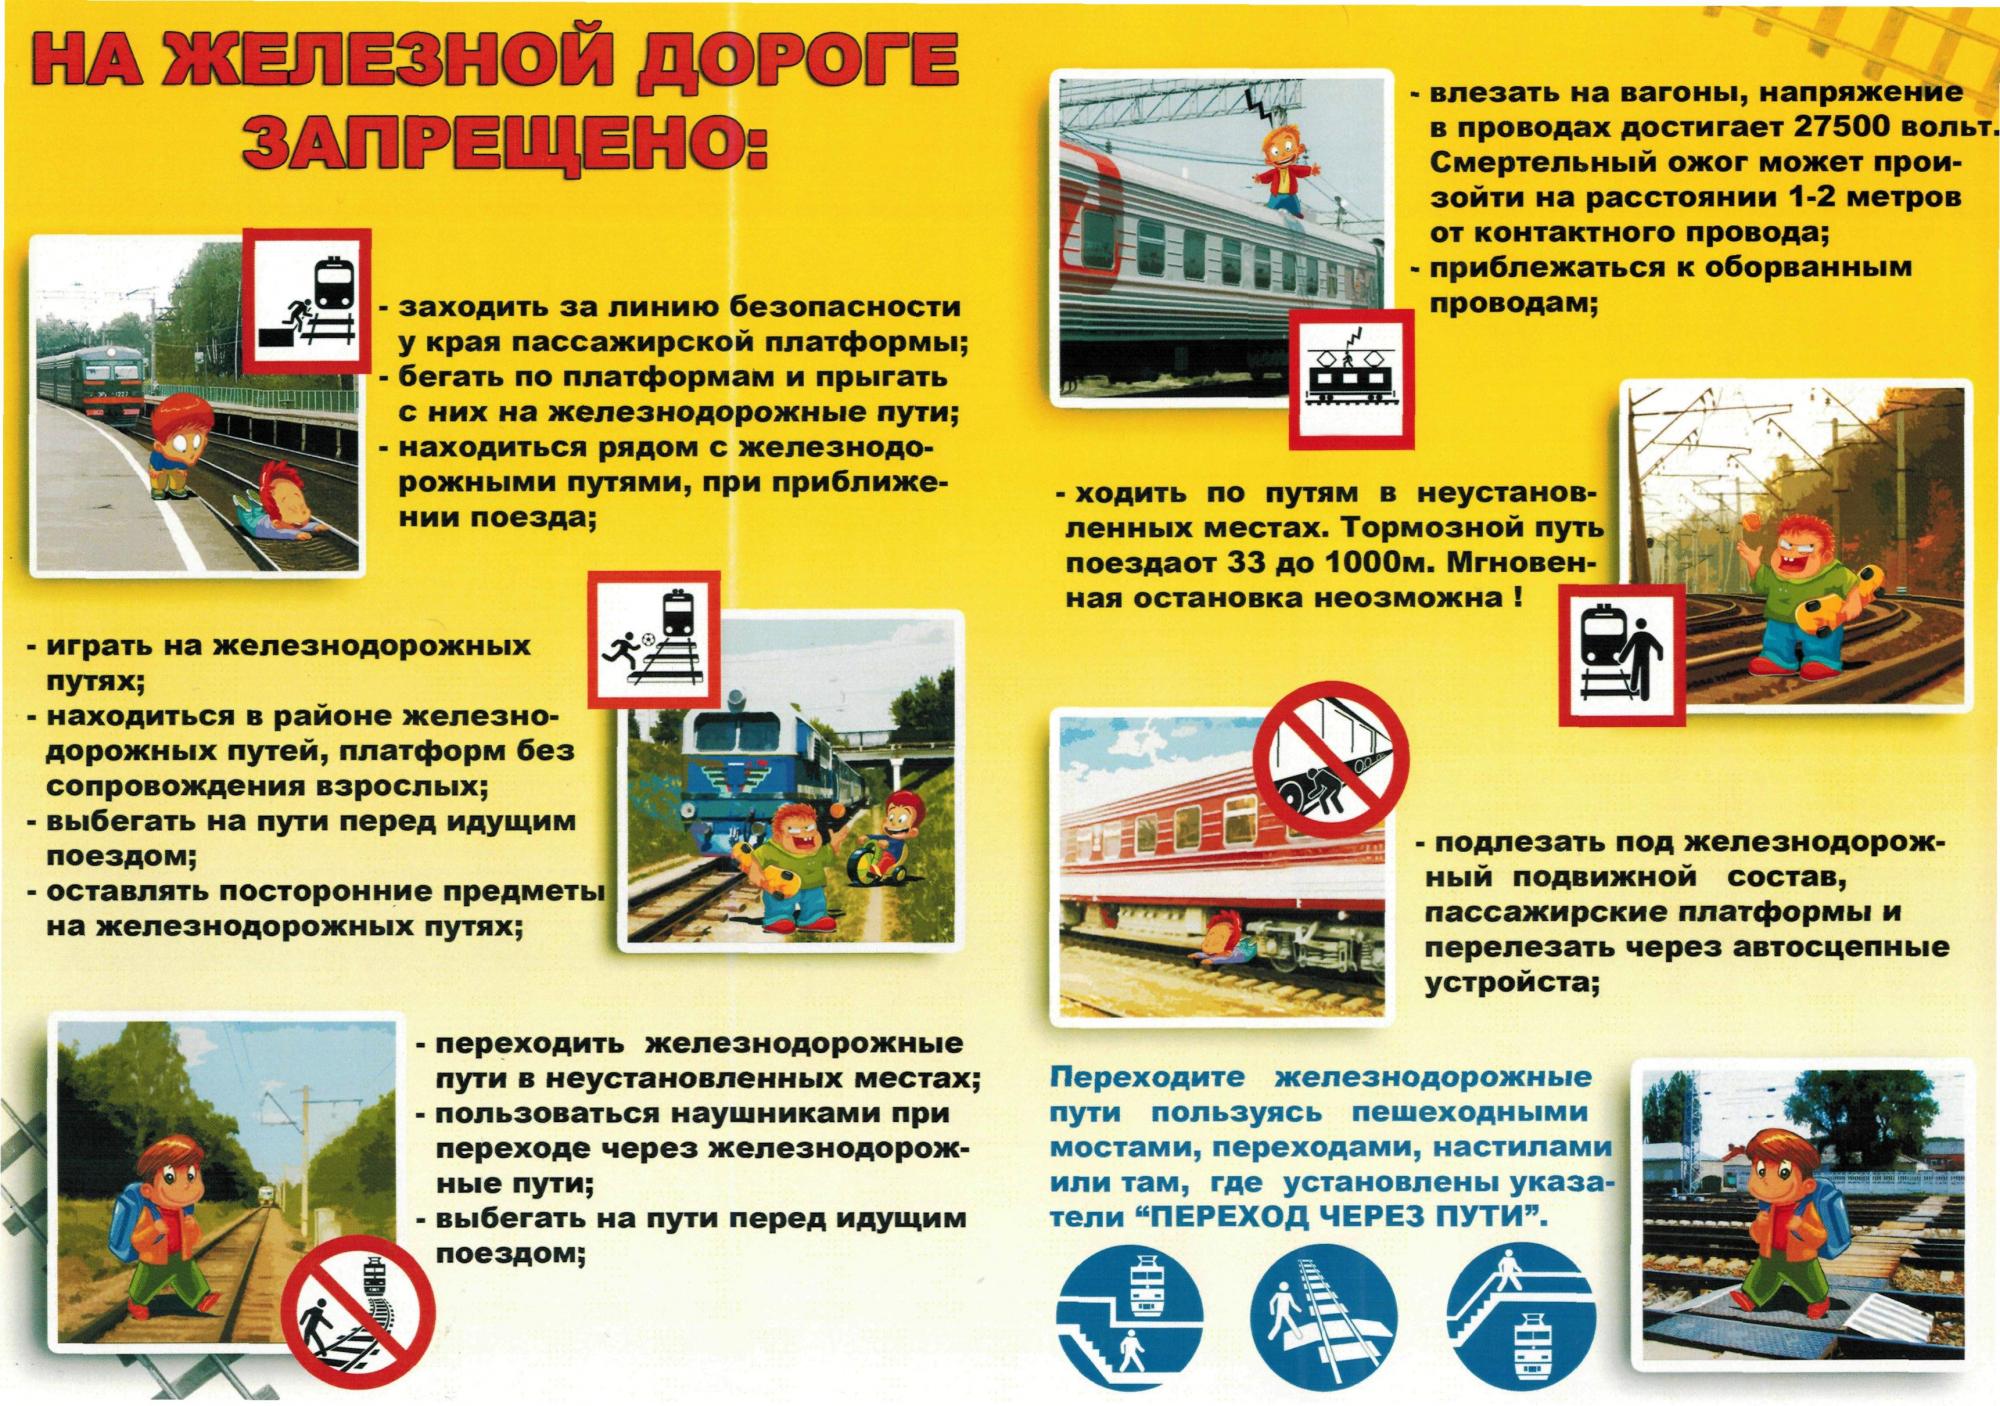 Профилактика правонарушений несовершеннолетних на объектах железнодорожной инфраструктуры.